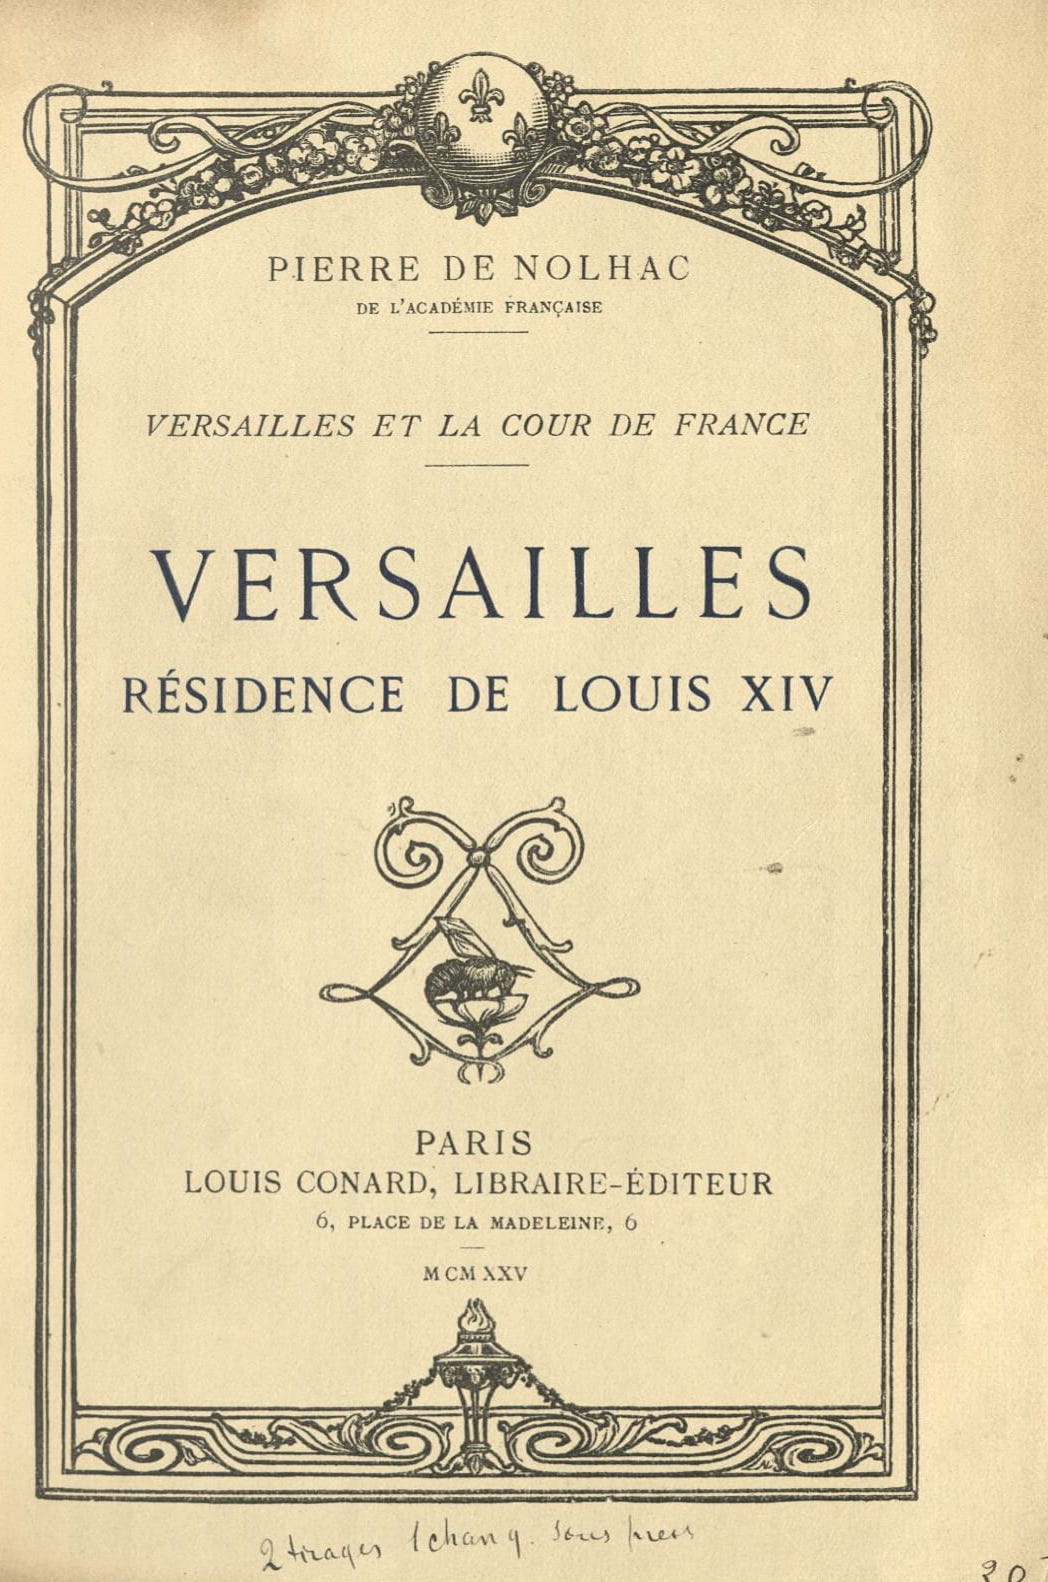 1925 Nolhac Versailles, Résidence de Louis XIV